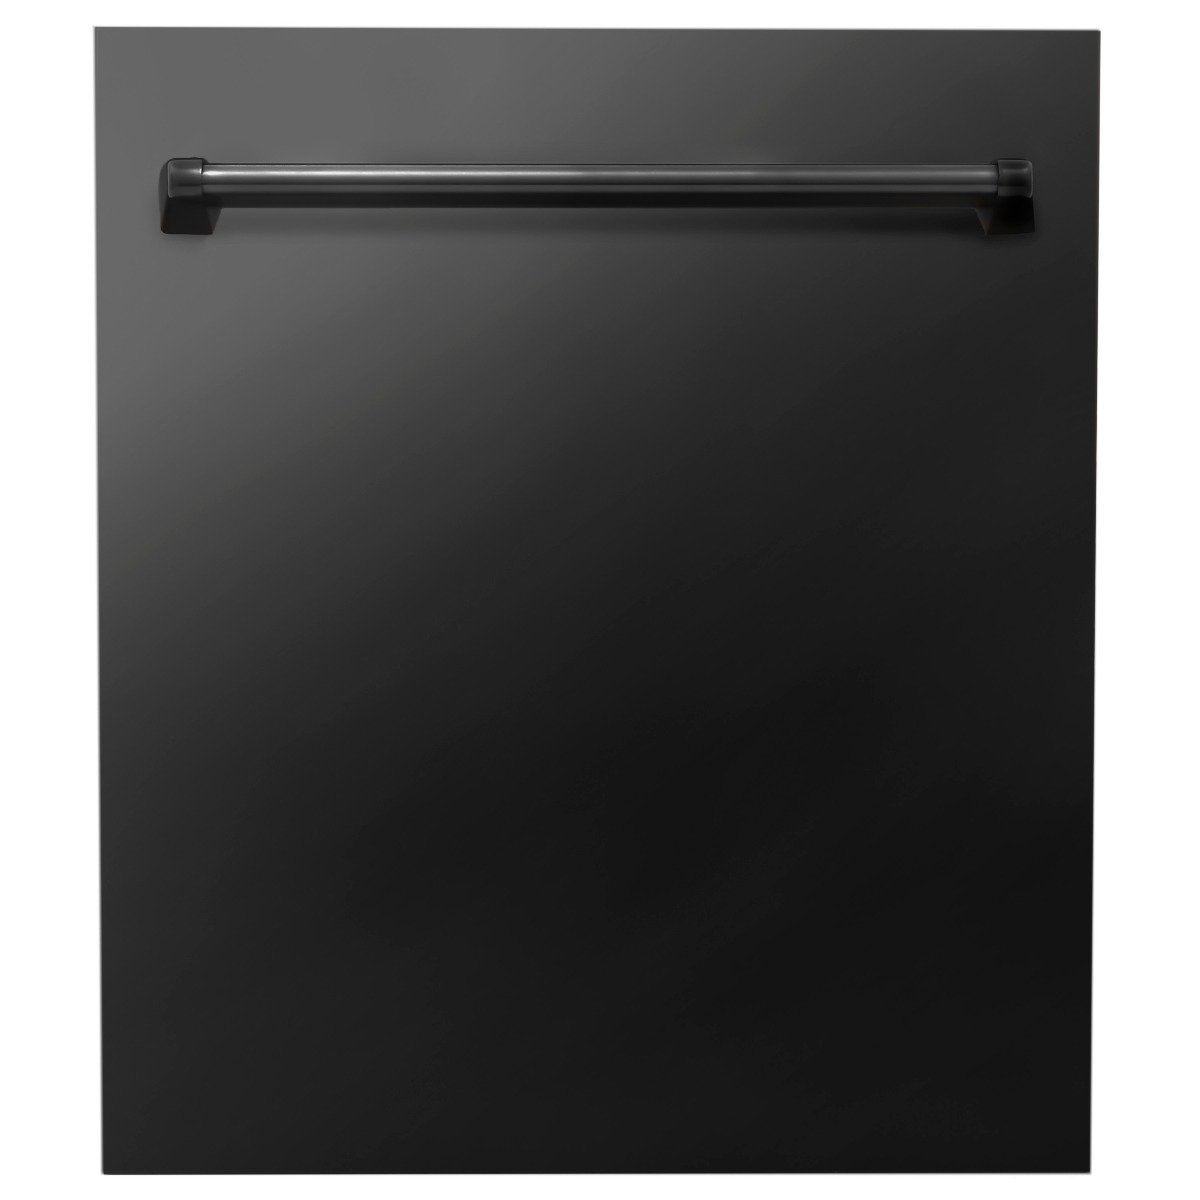 ZLINE Appliance Package - 36 in. Gas Range, Range Hood, Dishwasher - Black Stainless Steel, 3KP-RGBRH36-DW